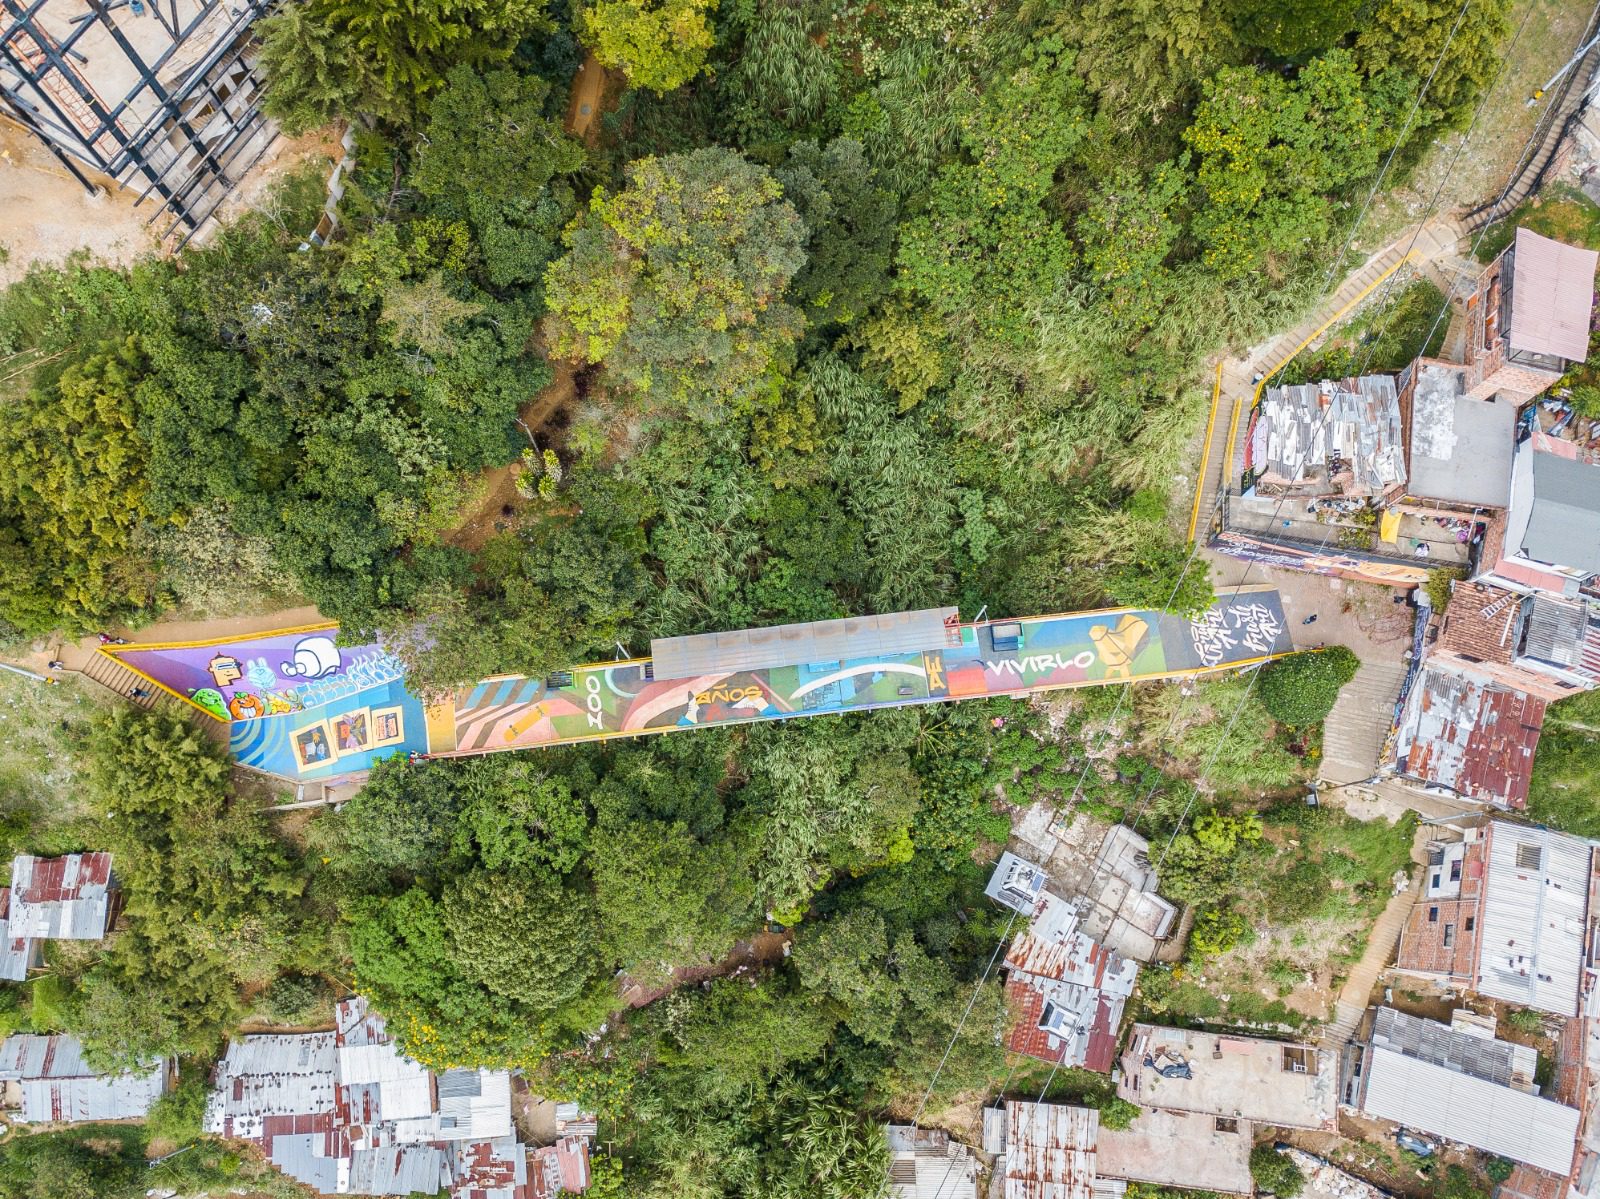 Conozca la obra de Graffiti Art que cuenta la historia del nororiente de Medellín